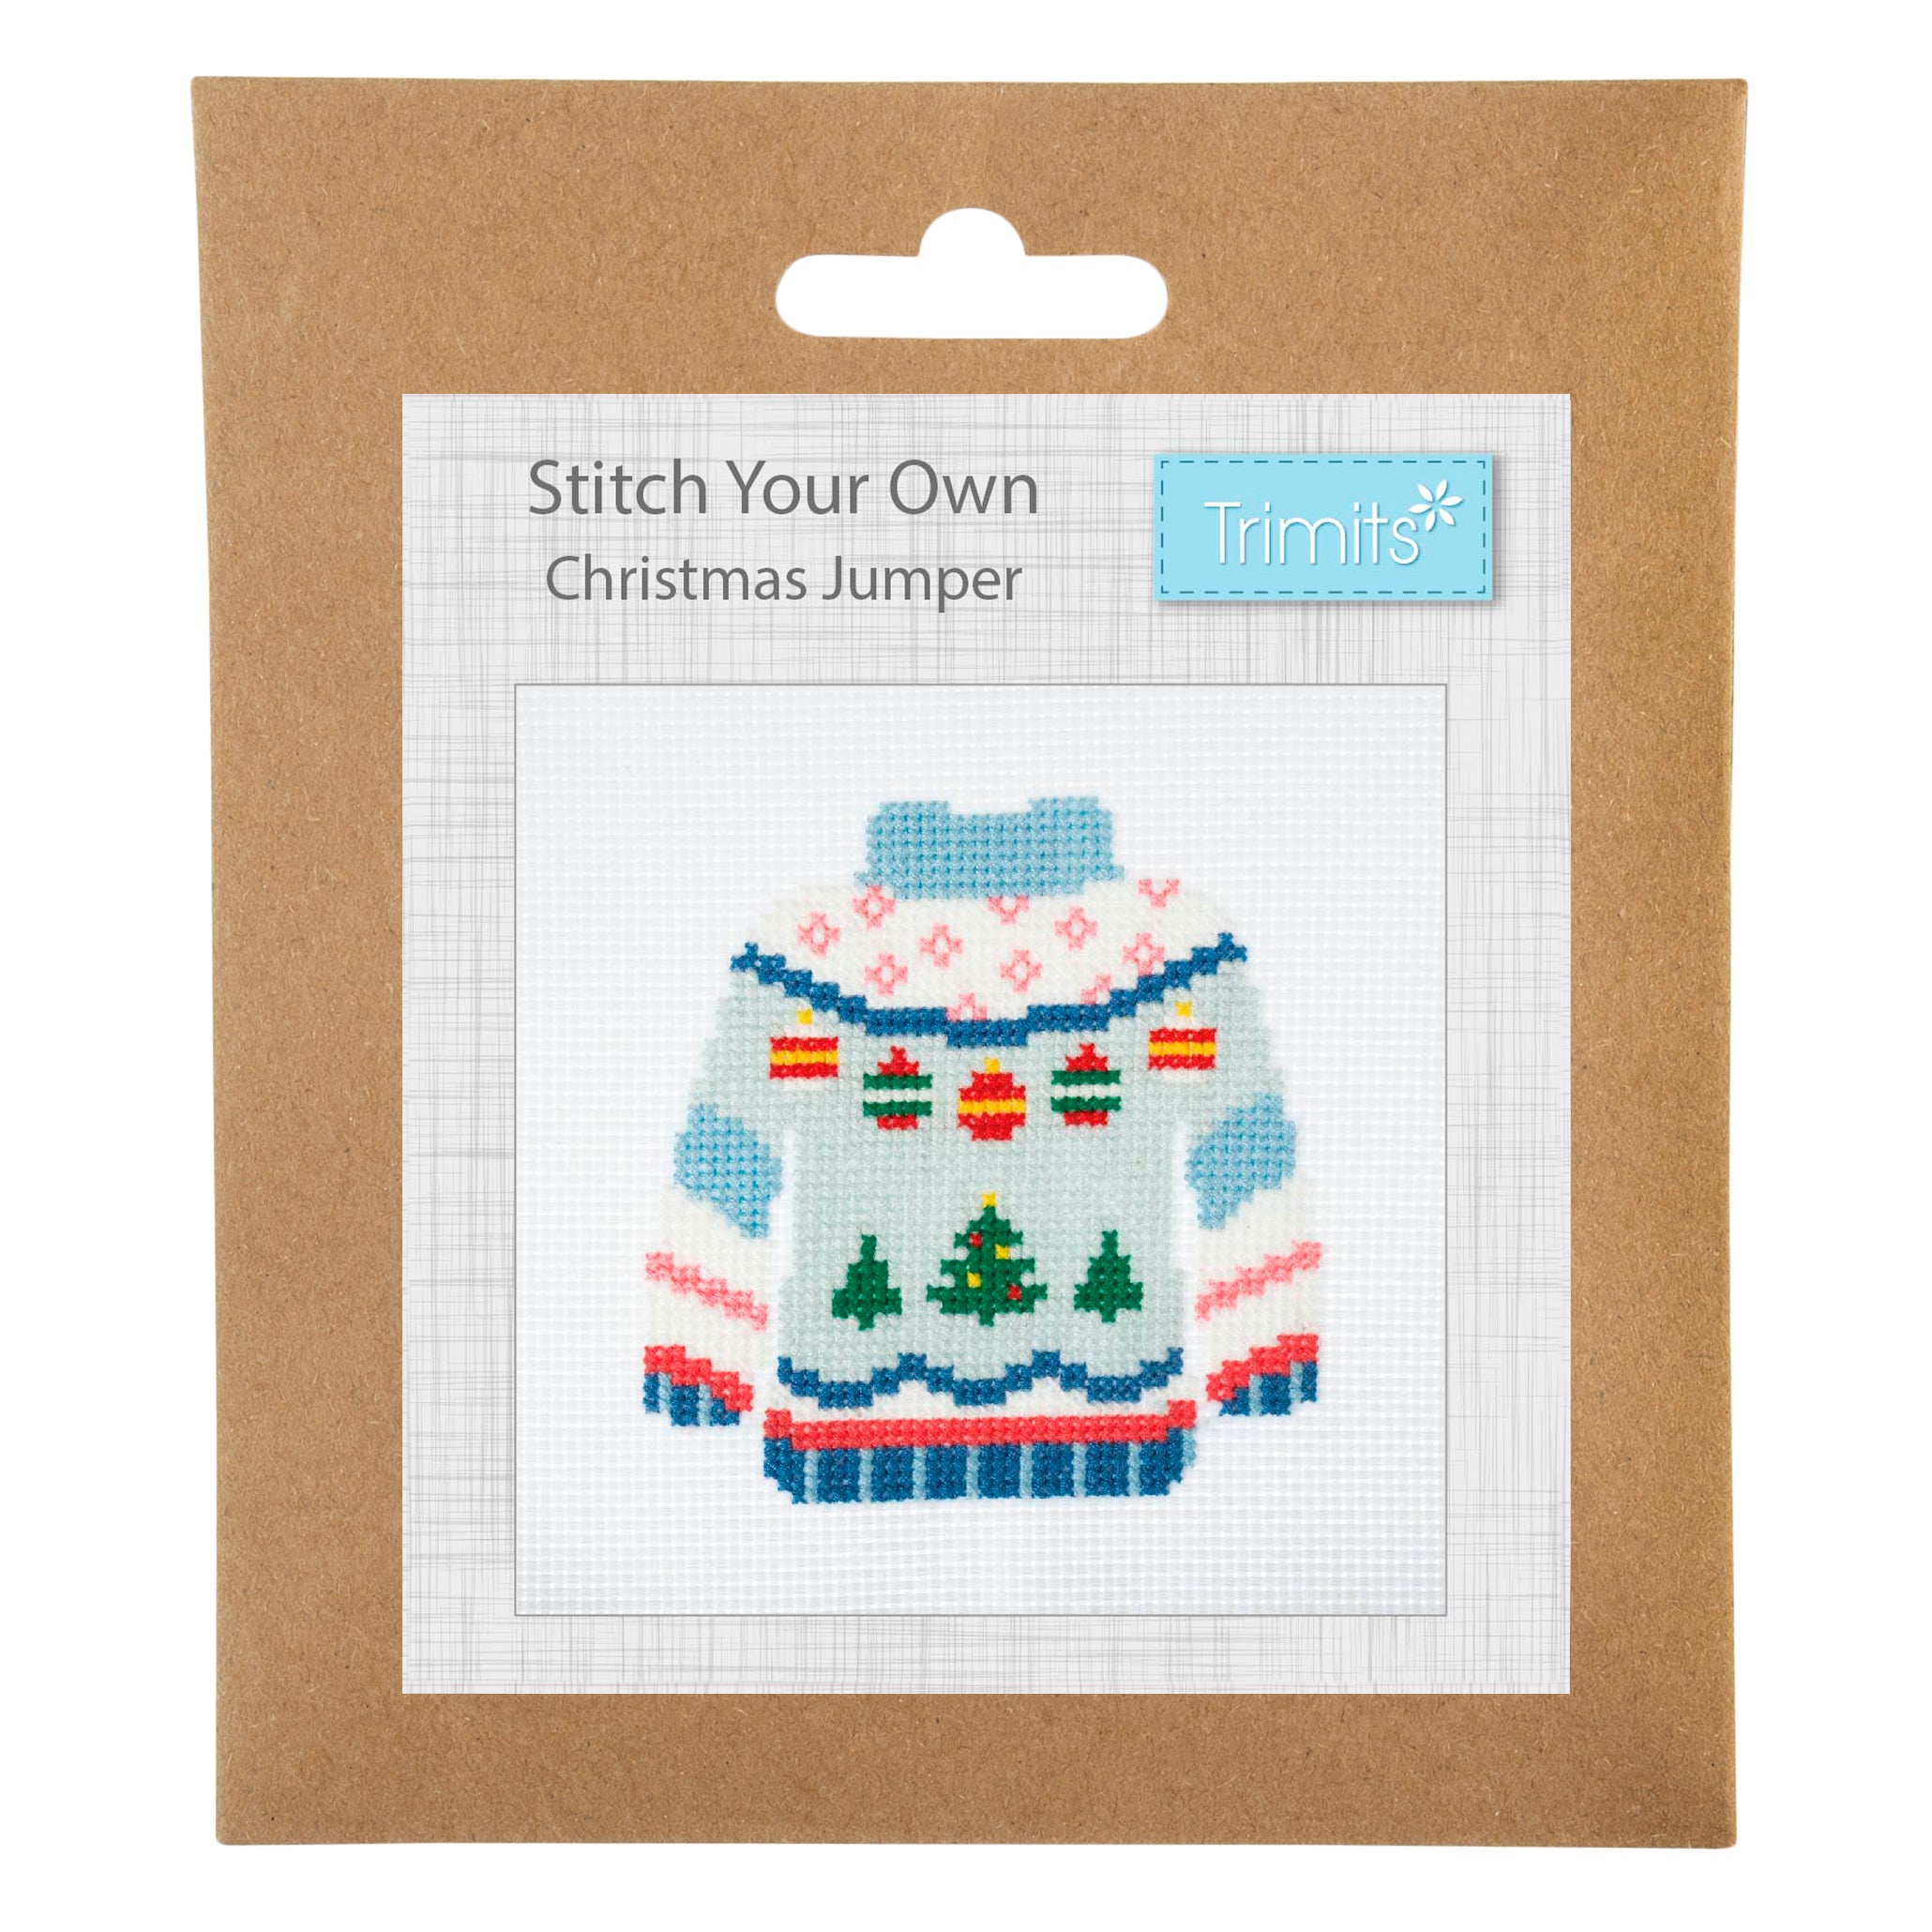 Trimits Mini Festive Cross Stitch Kit: Christmas Jumper